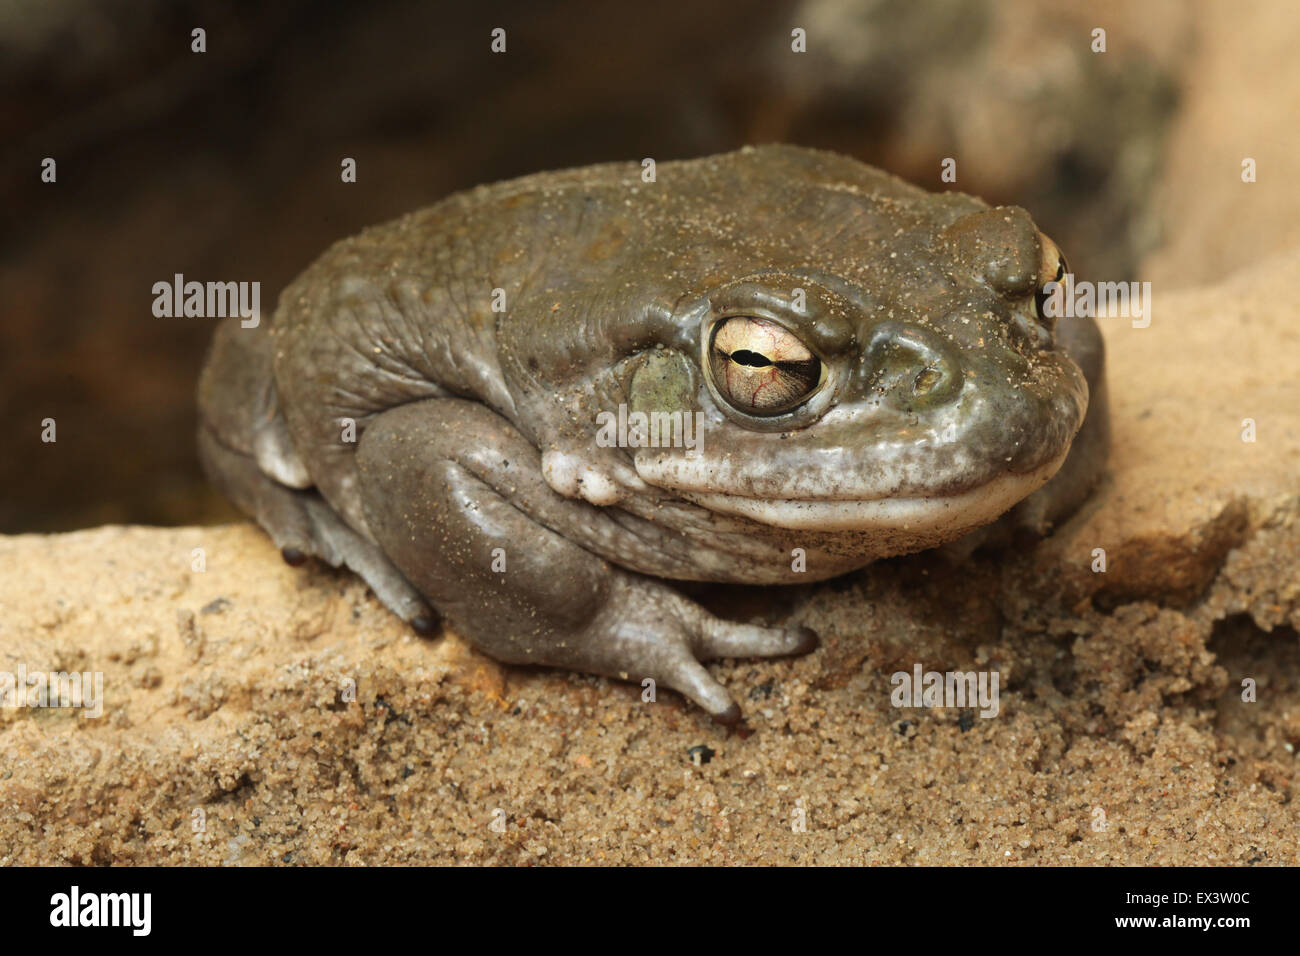 Colorado river toad (Incilius alvarius), également connu sous le nom de désert de Sonora toad à zoo de Francfort à Francfort en Allemagne. Banque D'Images